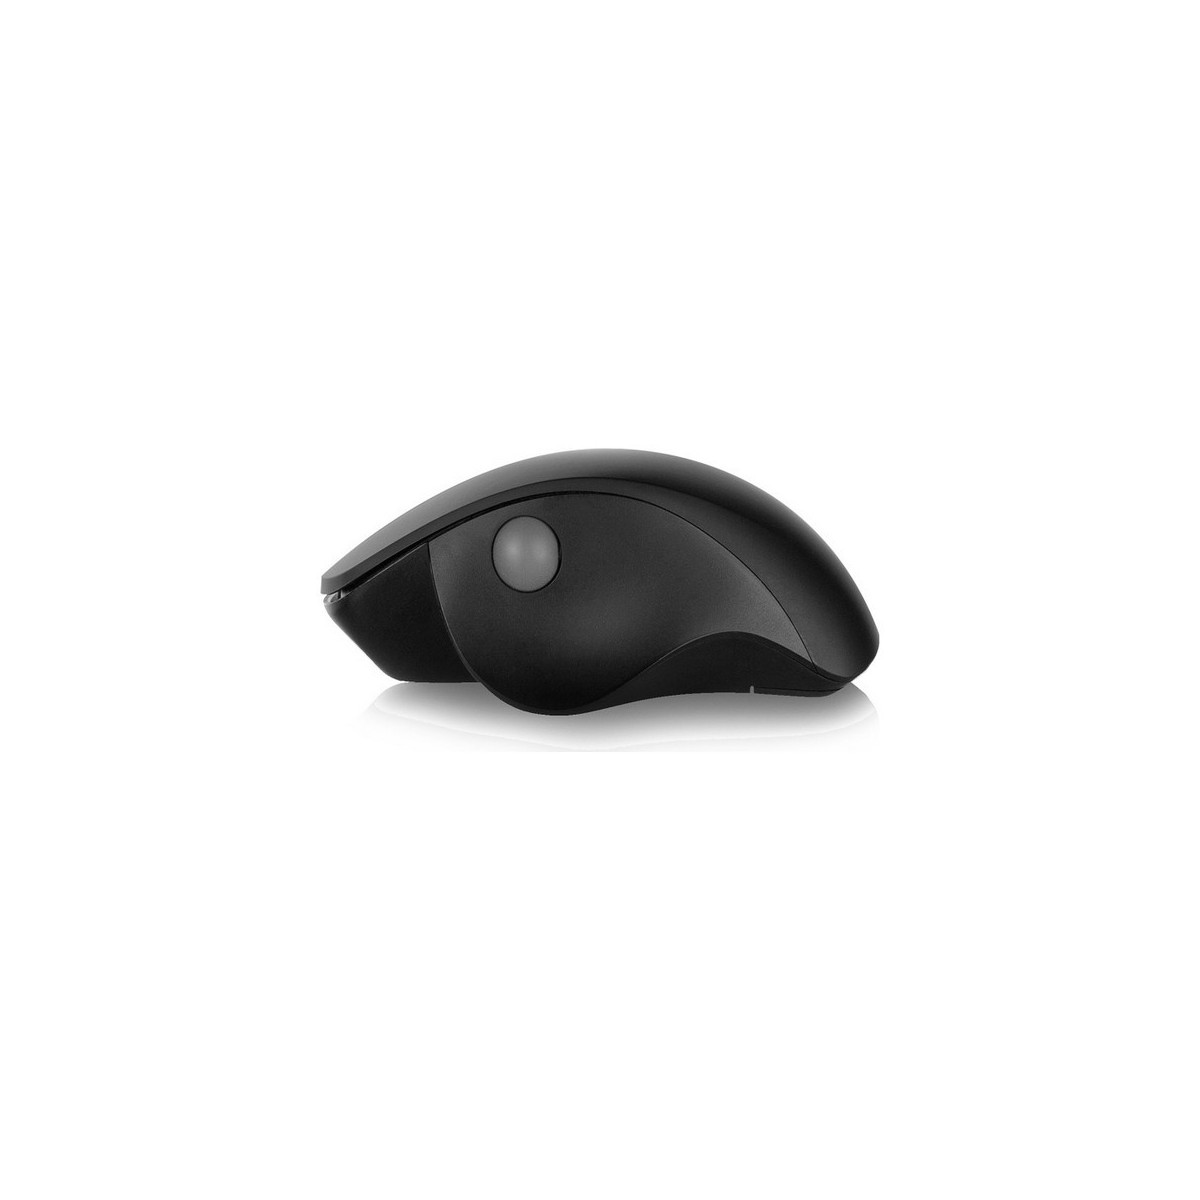 Maus, Wireless Schwarz EWENT Schnurlose Mouse